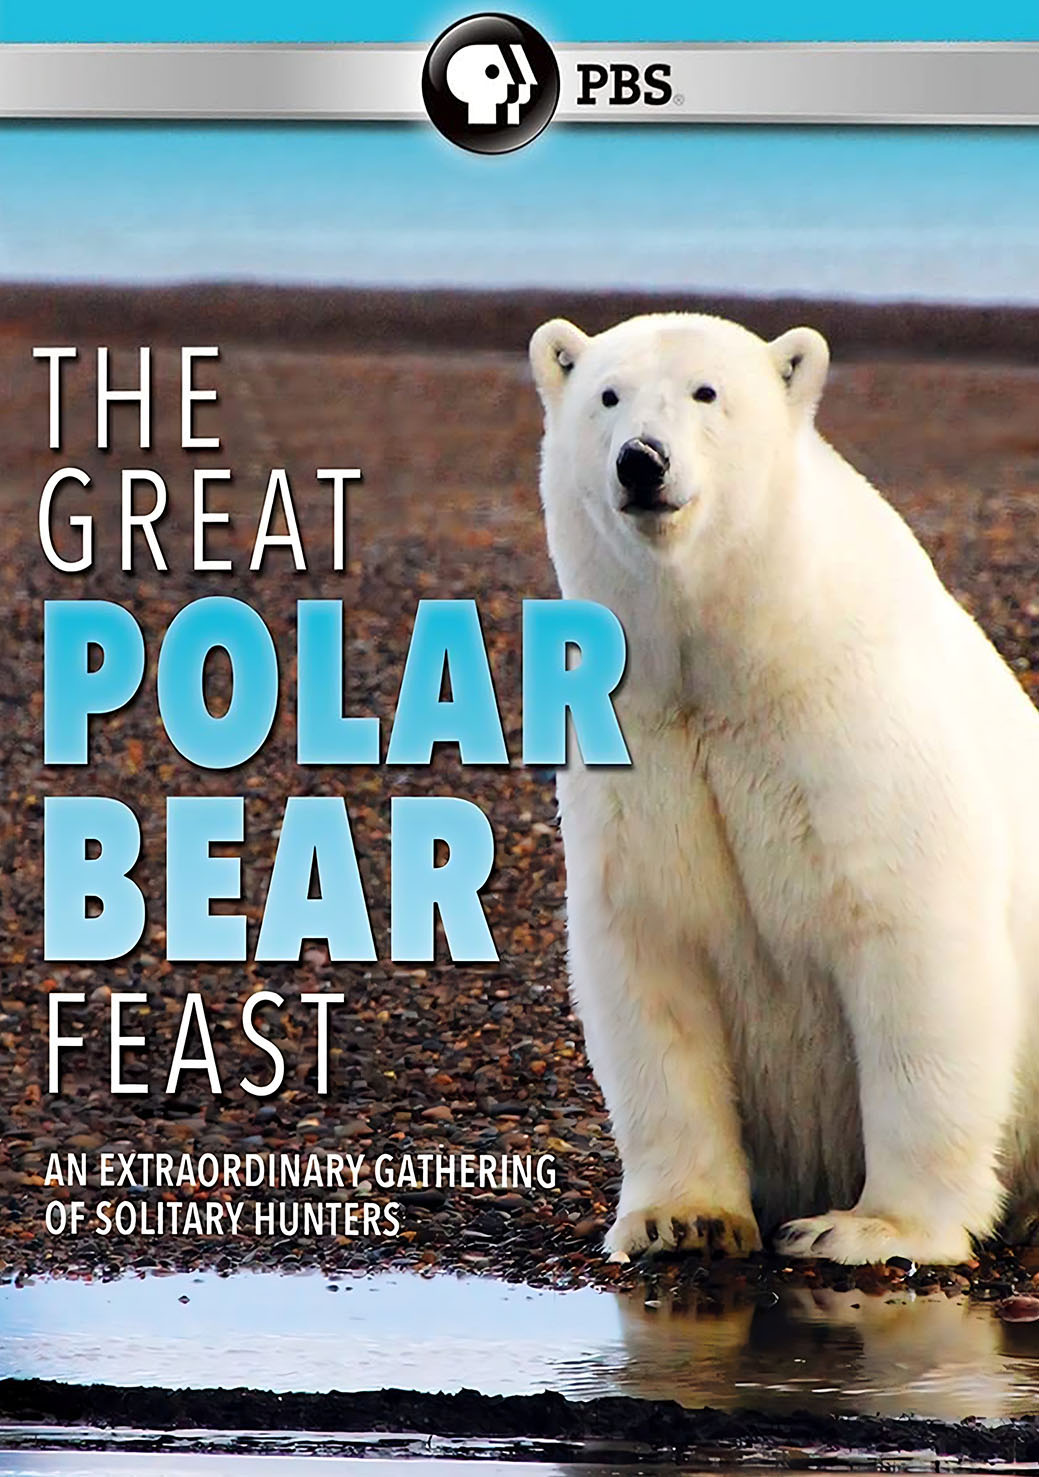 The Great Polar Bear Feast